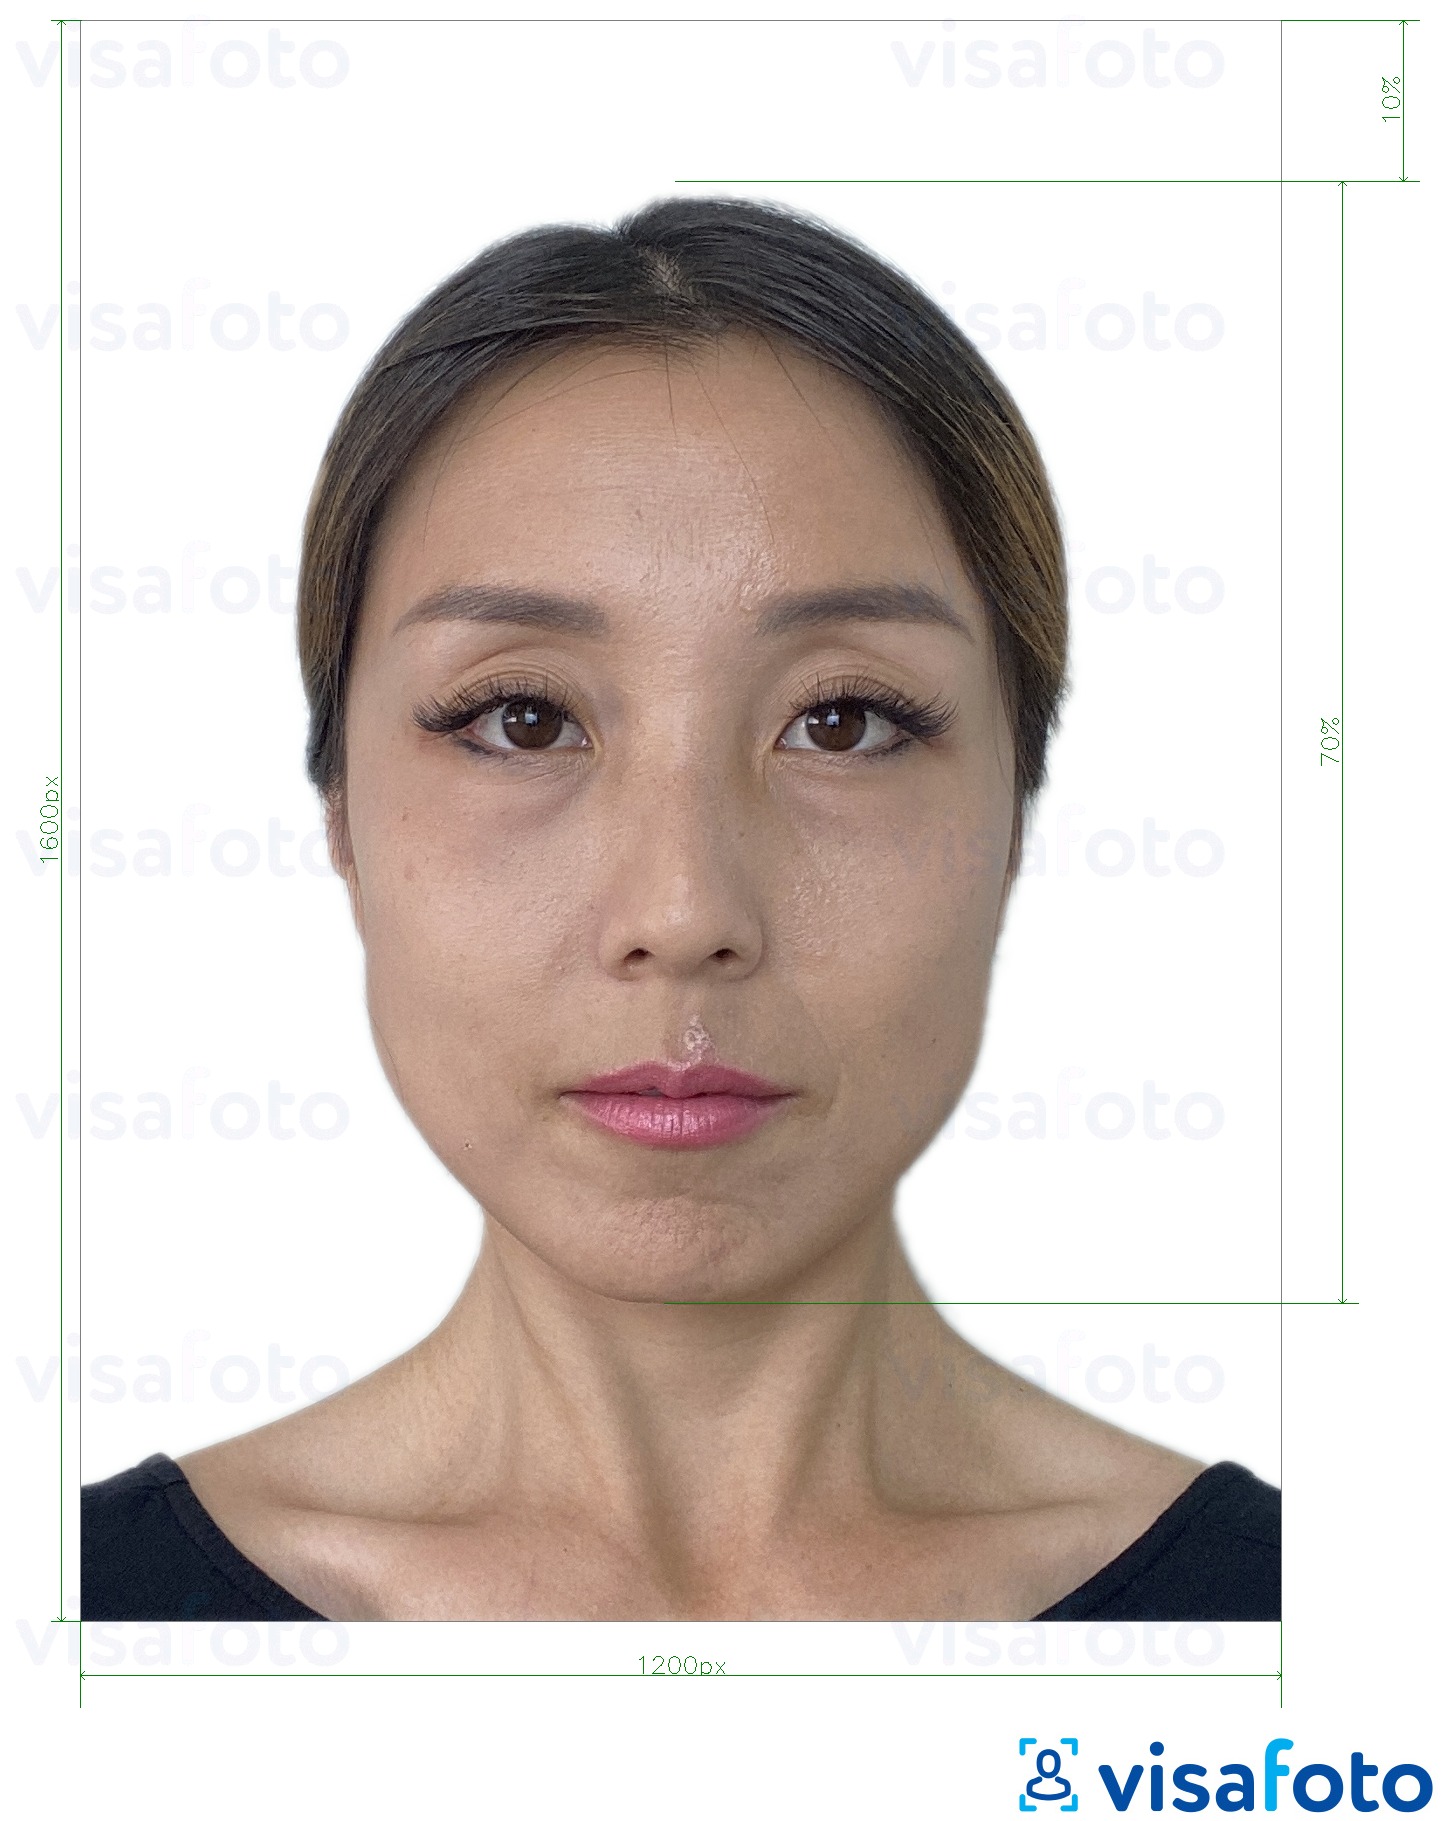 Παράδειγμα φωτογραφίας για Ηλεκτρονικό διαβατήριο του Χονγκ Κονγκ 1200x1600 εικονοστοιχεία με ακριβείς προδιαγραφές μεγέθους